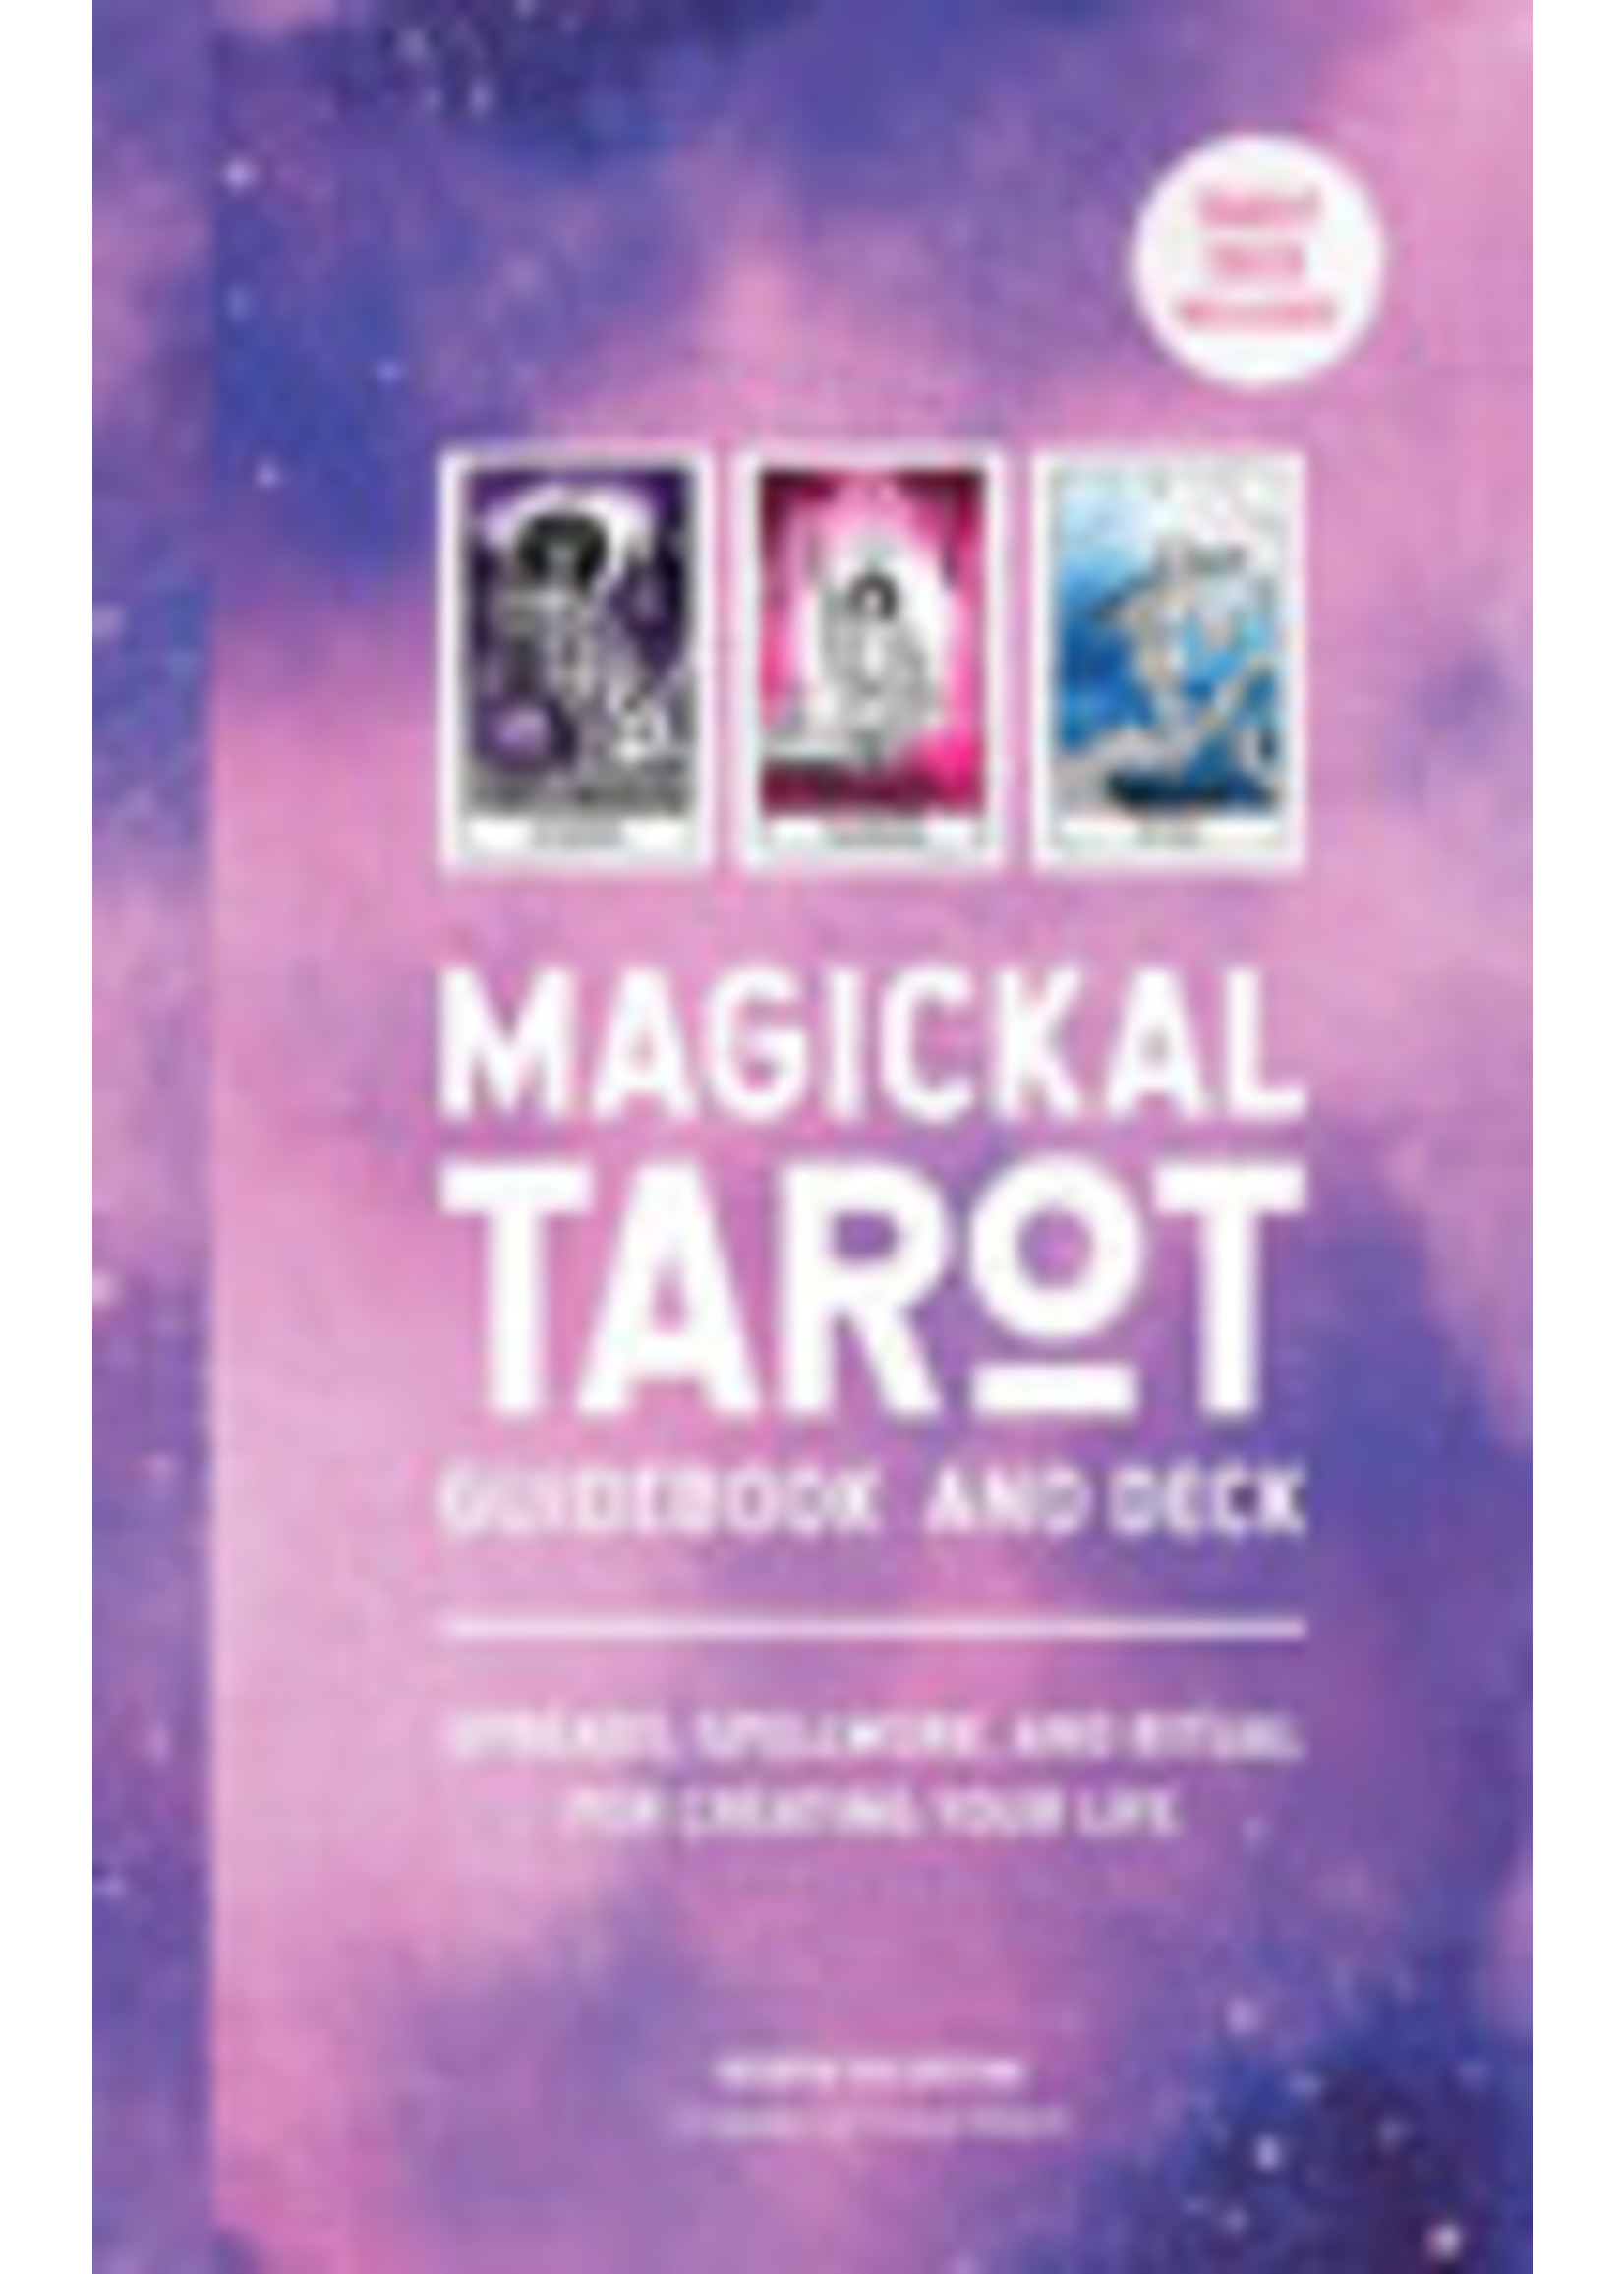 Magickal Tarot